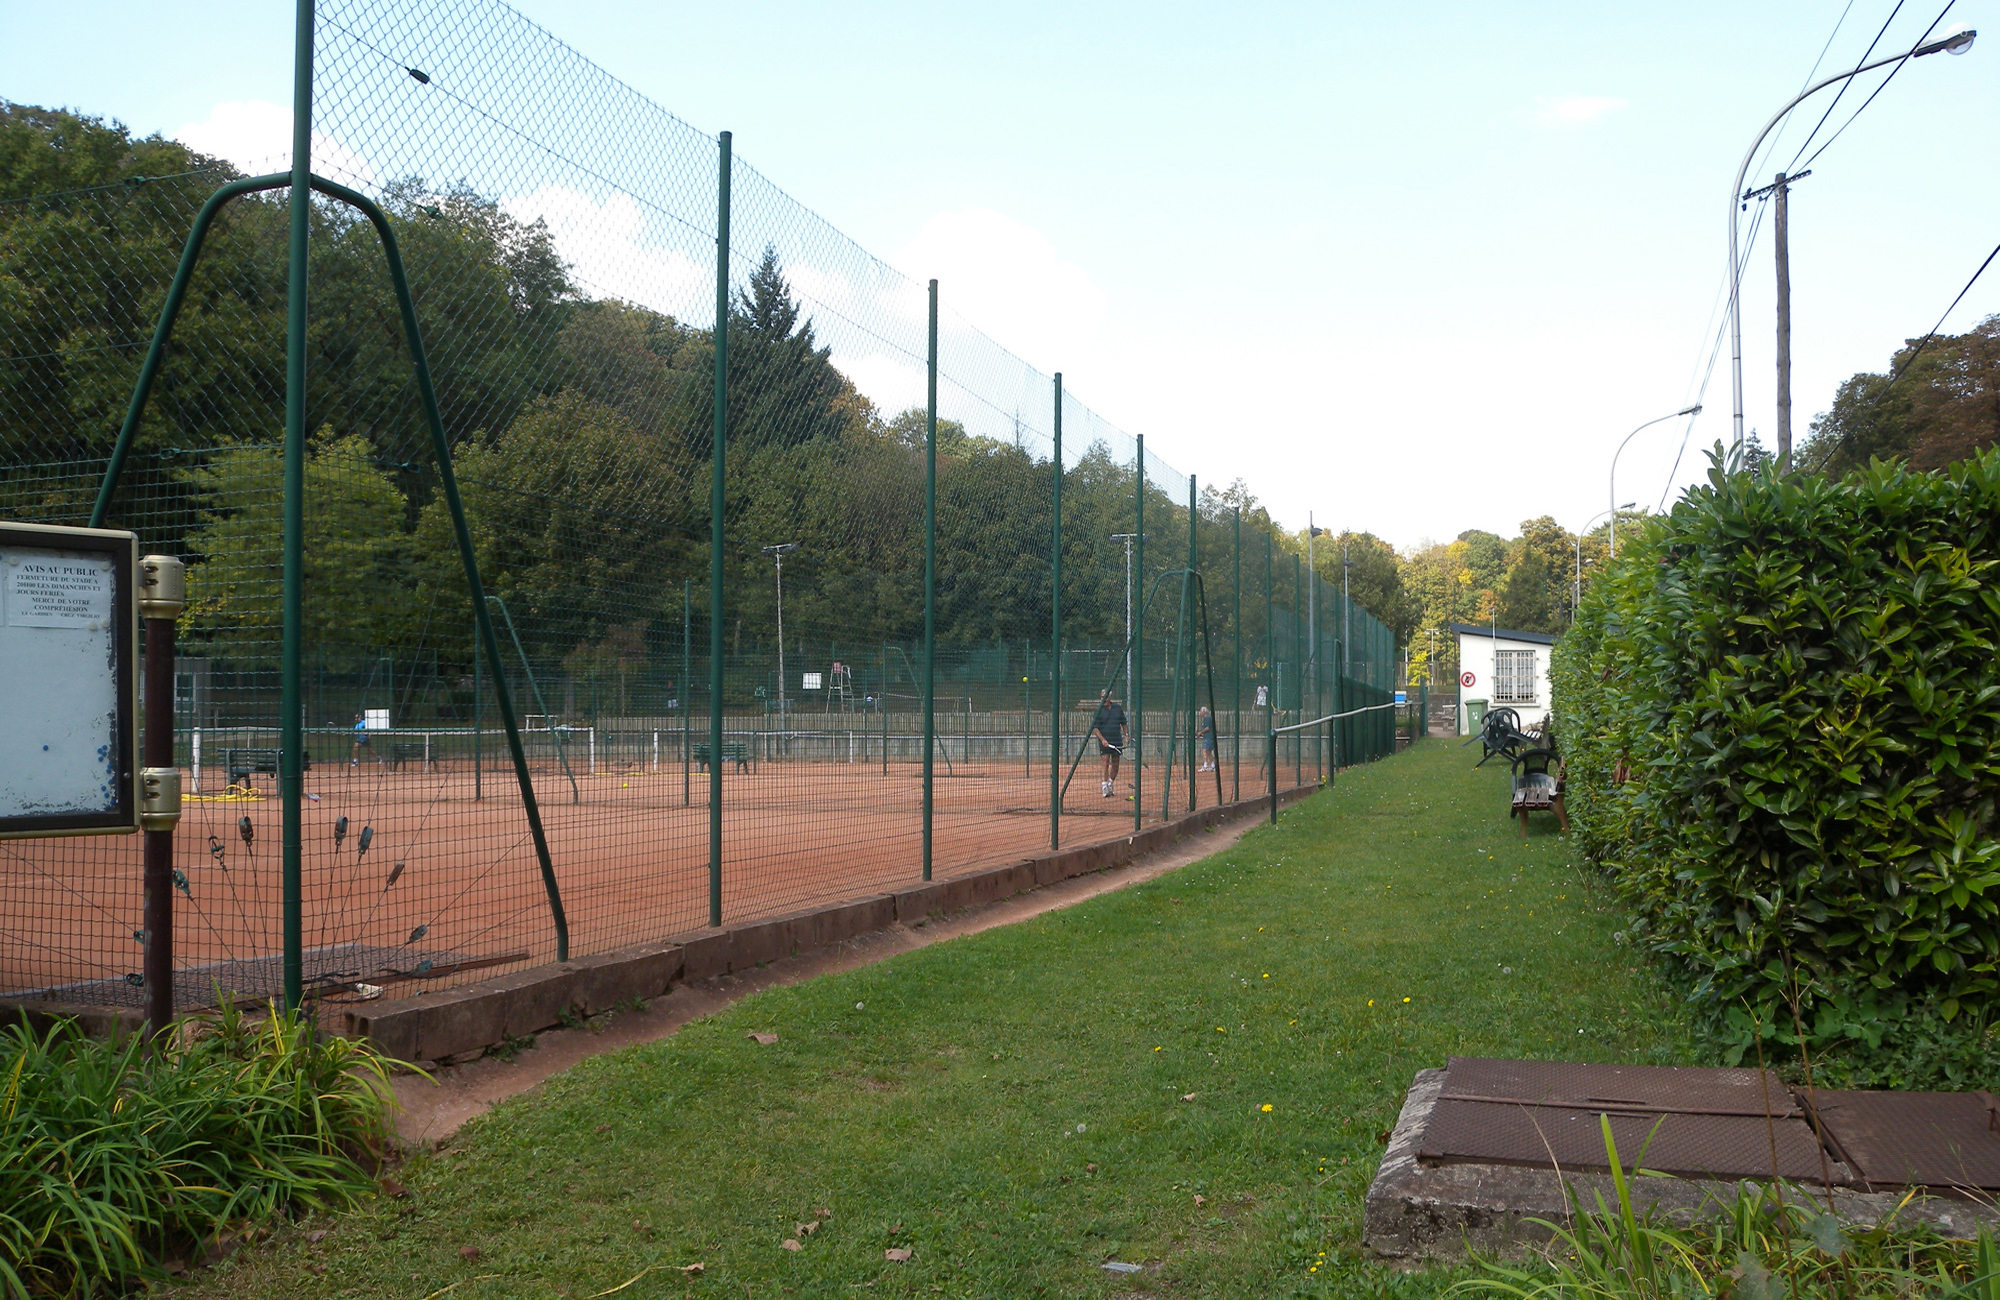 Meudon, les courts de tennis aménagés dans l'emprise de la perspective en grand format (nouvelle fenêtre)